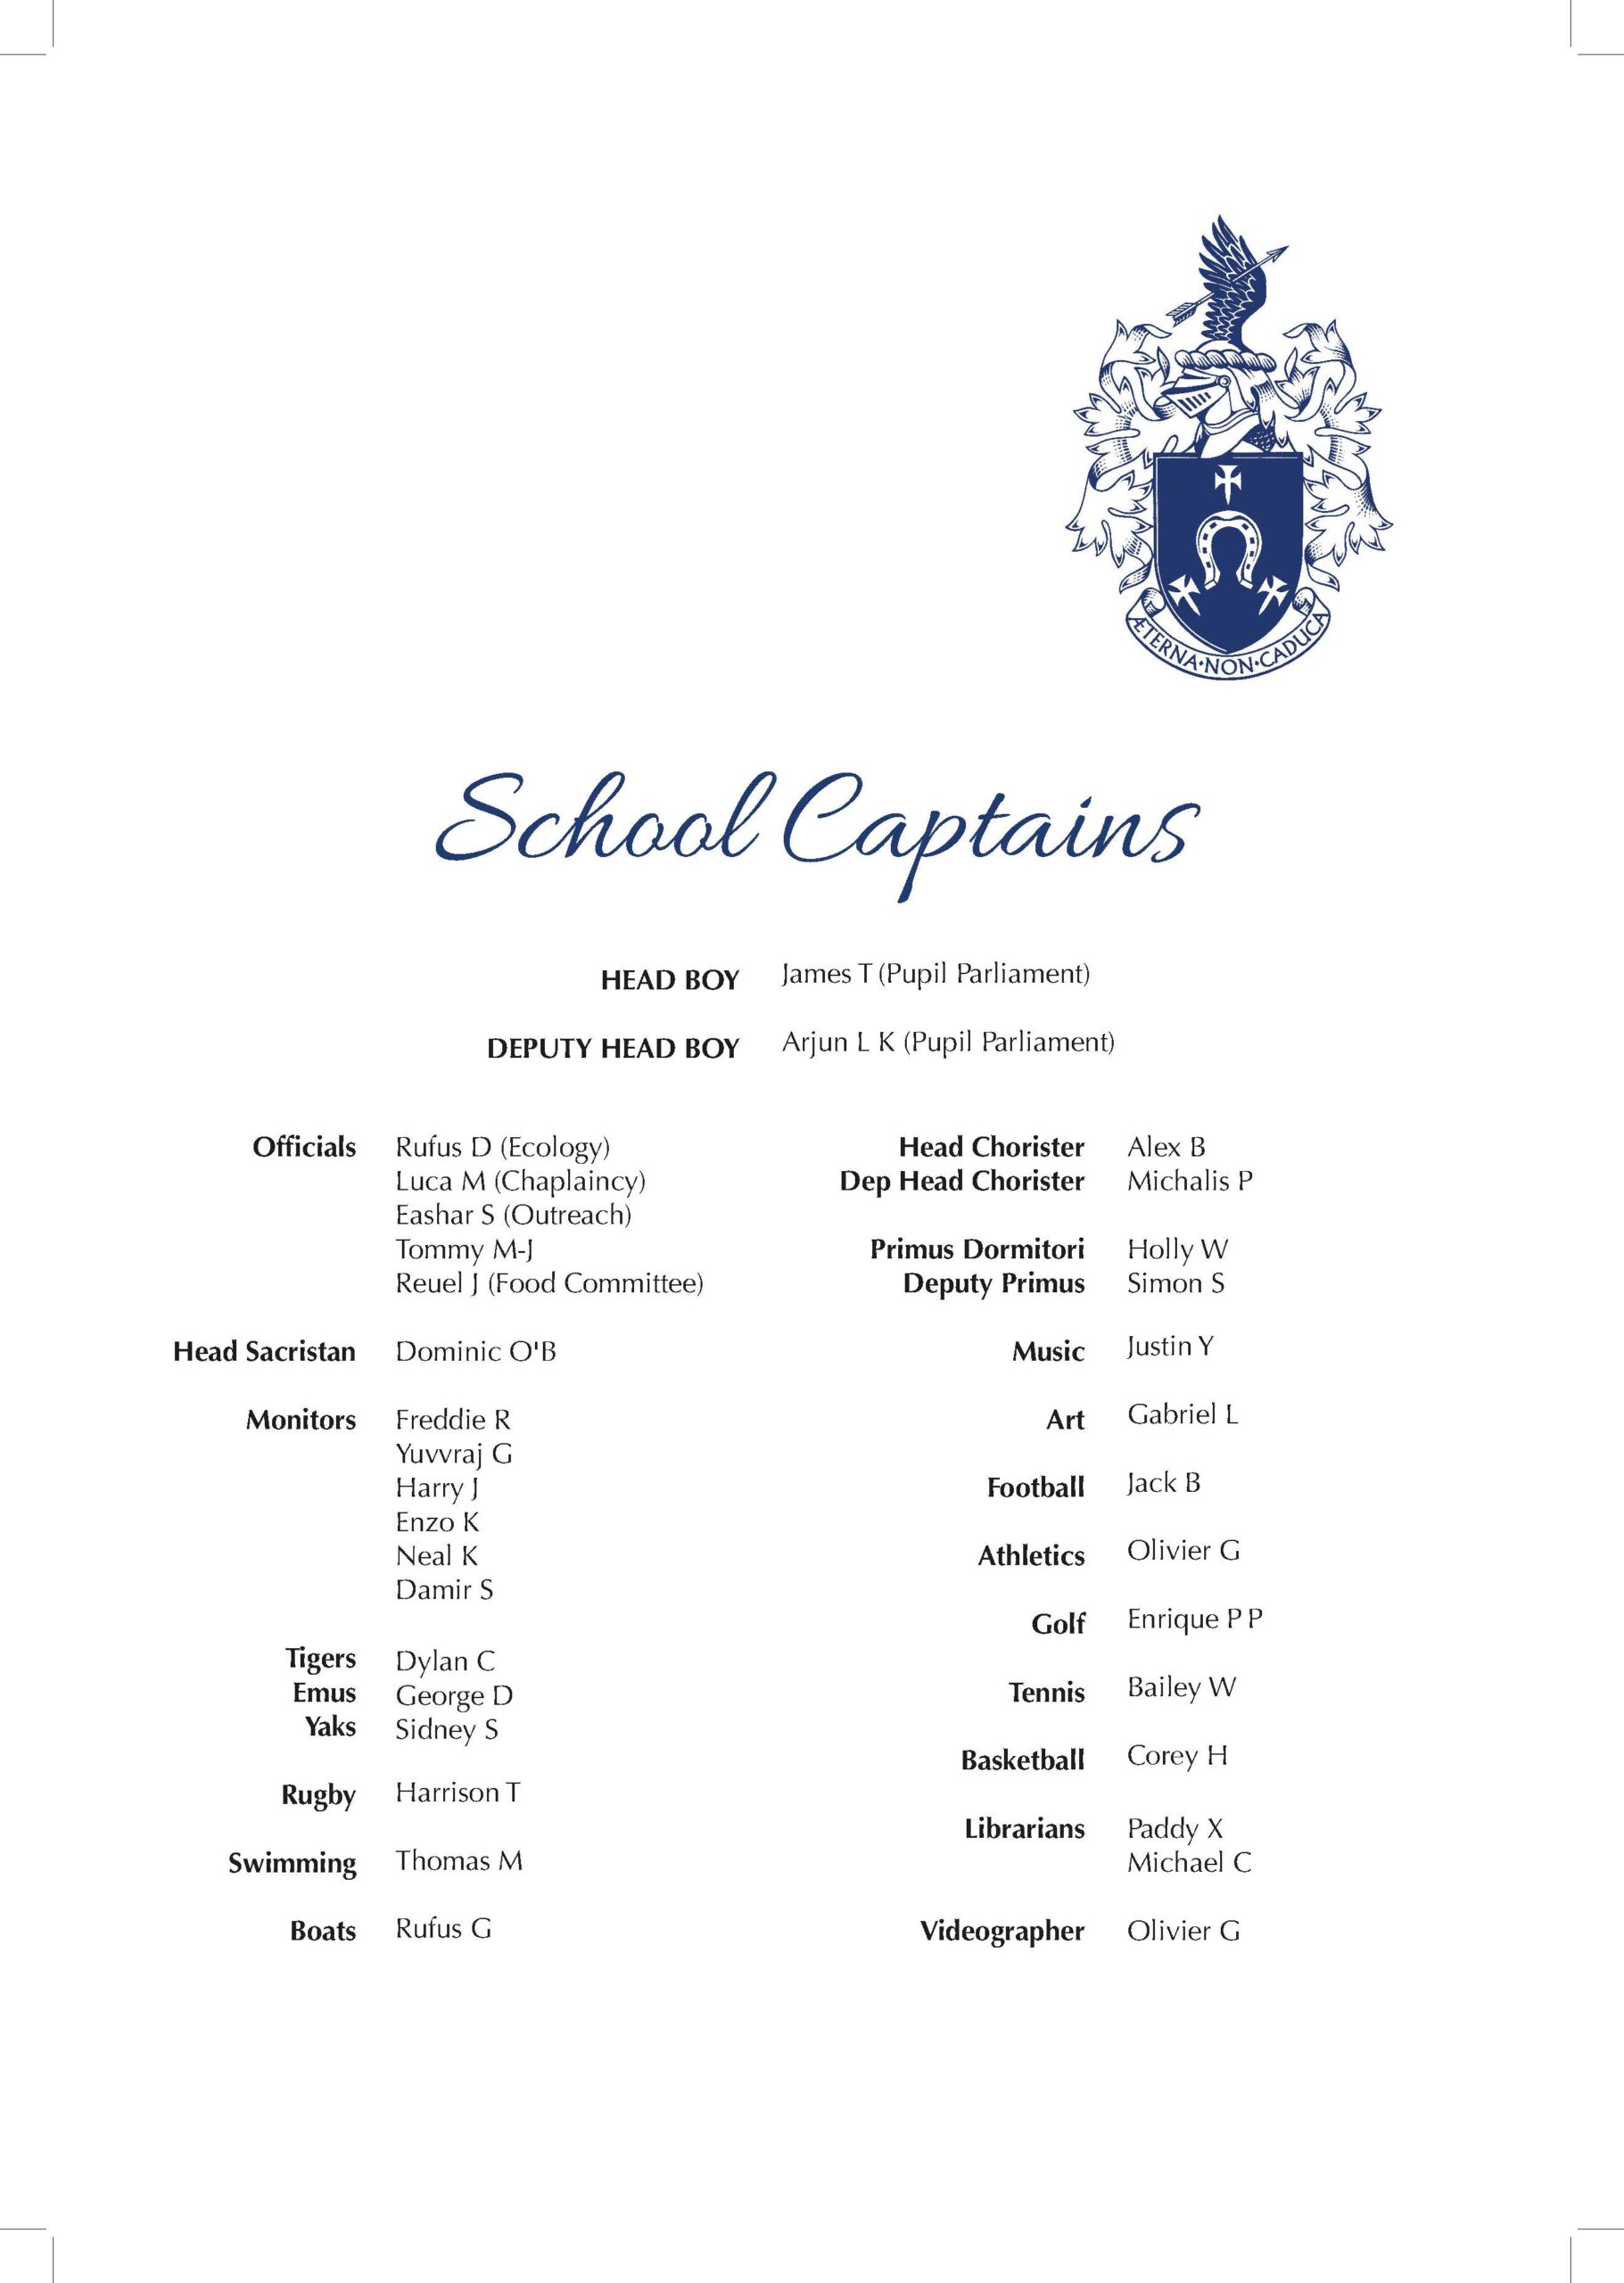 St John's Beaumont School Captains 2021-22